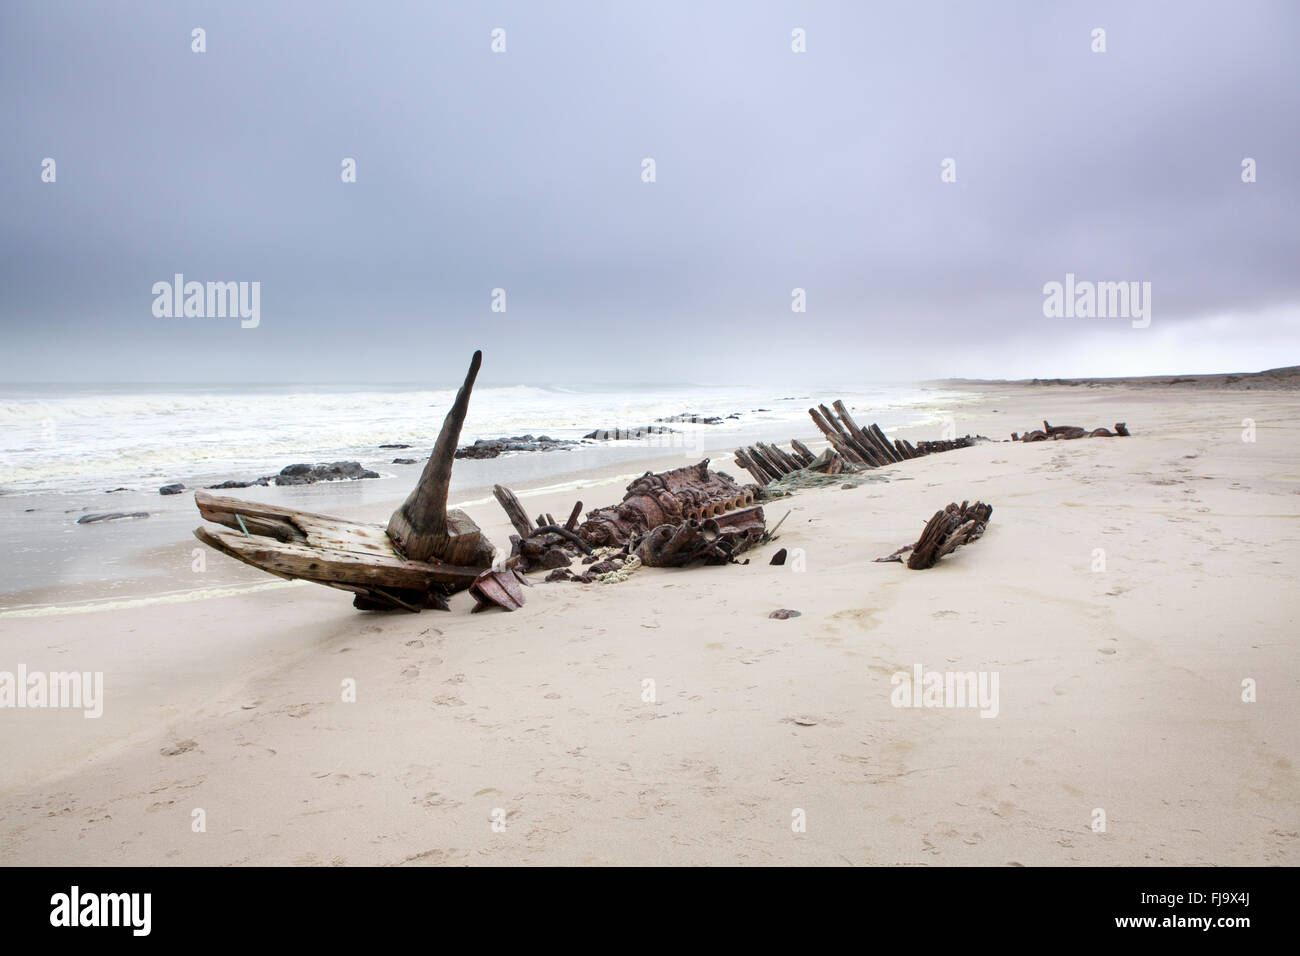 Shipwreck on the Skeleton Coast, Namibia. Stock Photo